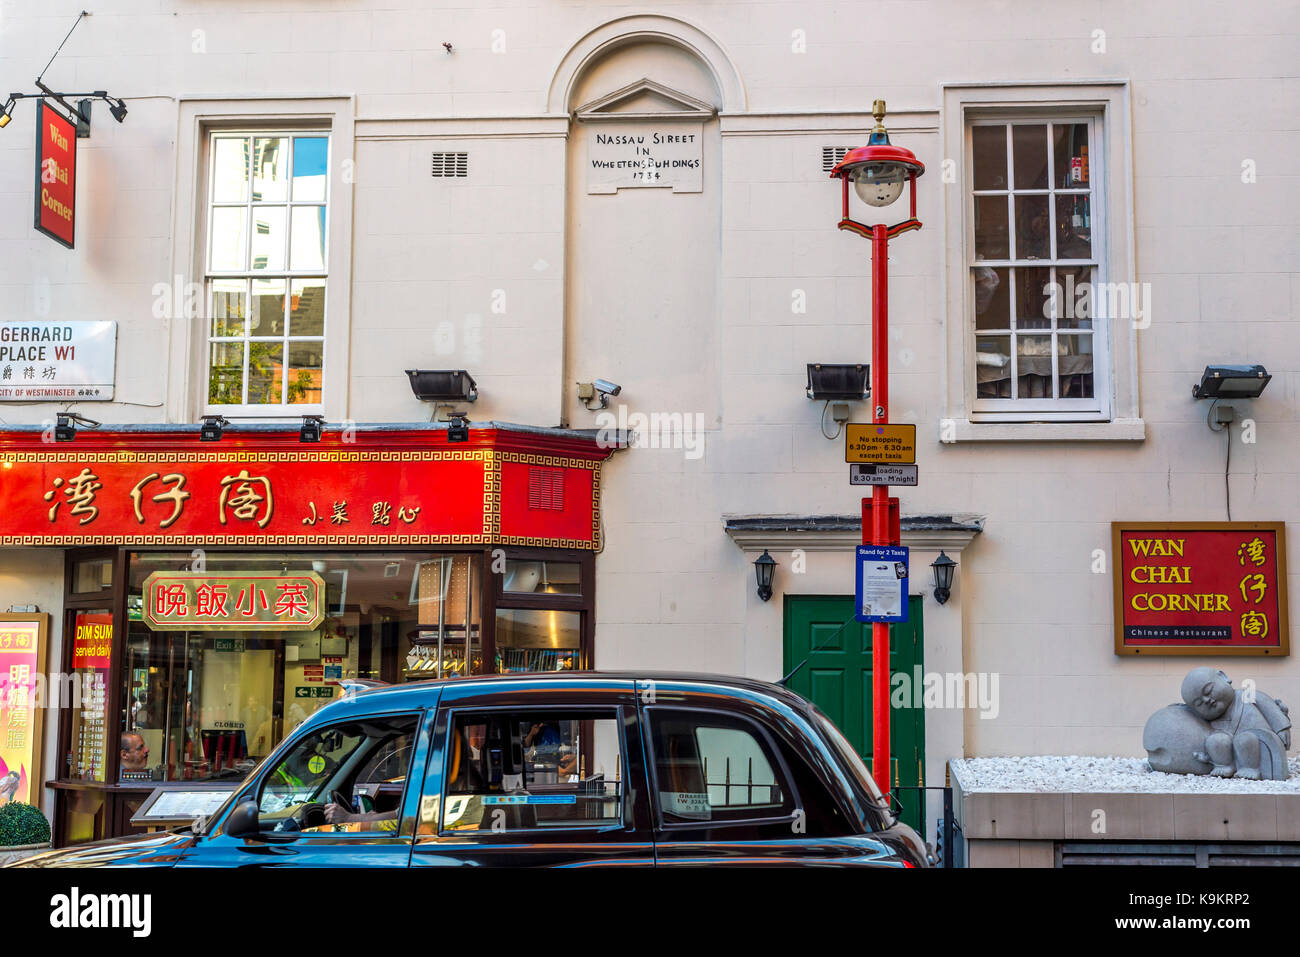 London taxi au coin de Wan Chai, Londres China Town Banque D'Images